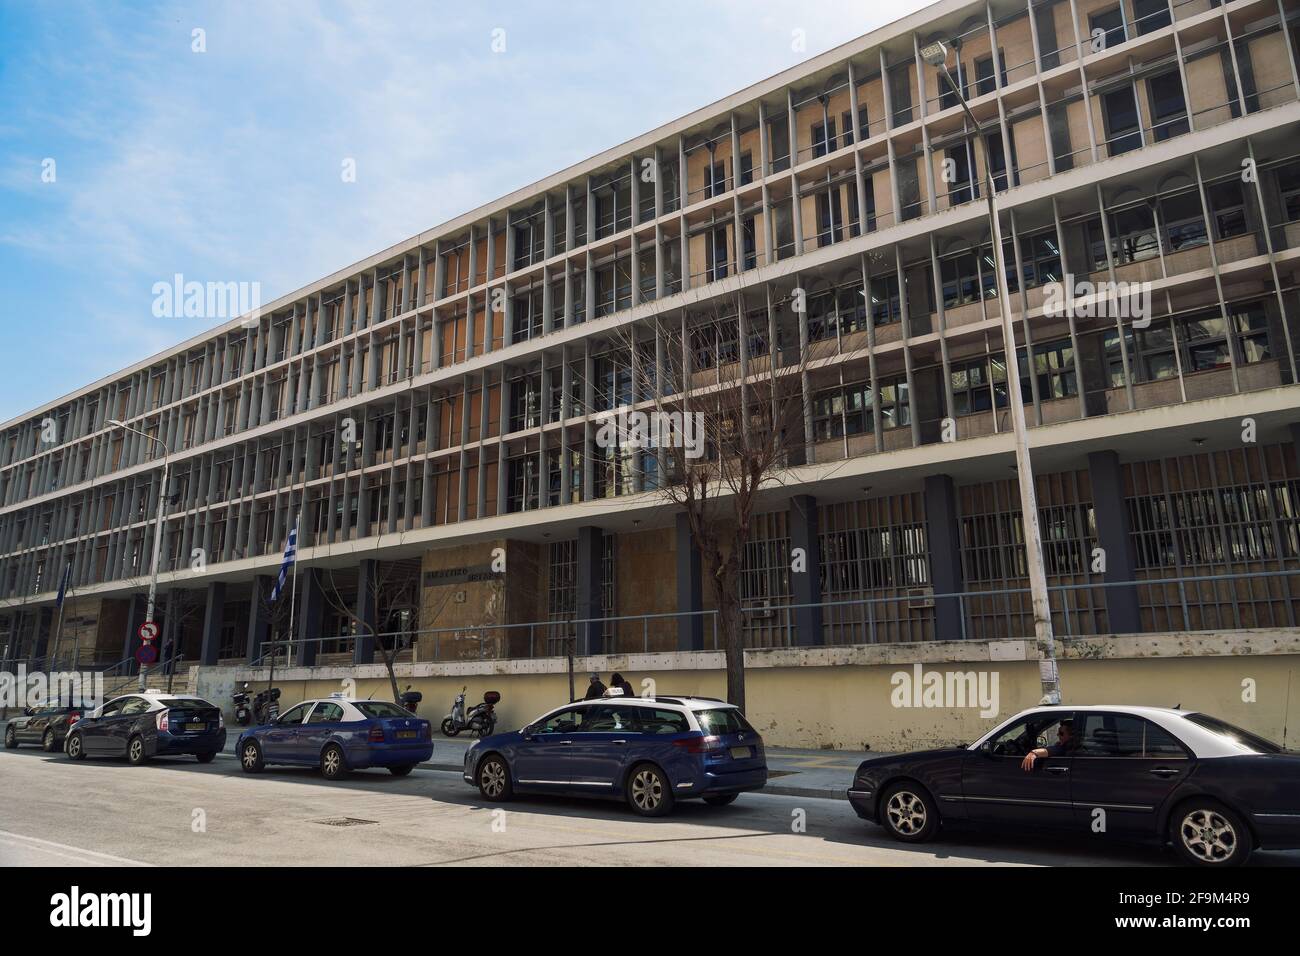 Salonicco, Grecia facciata del tribunale con bandiera ellenica che sventola. Esterno giorno vista ad angolo basso dei tribunali della giustizia edificio con segno e taxi parcheggiati Foto Stock